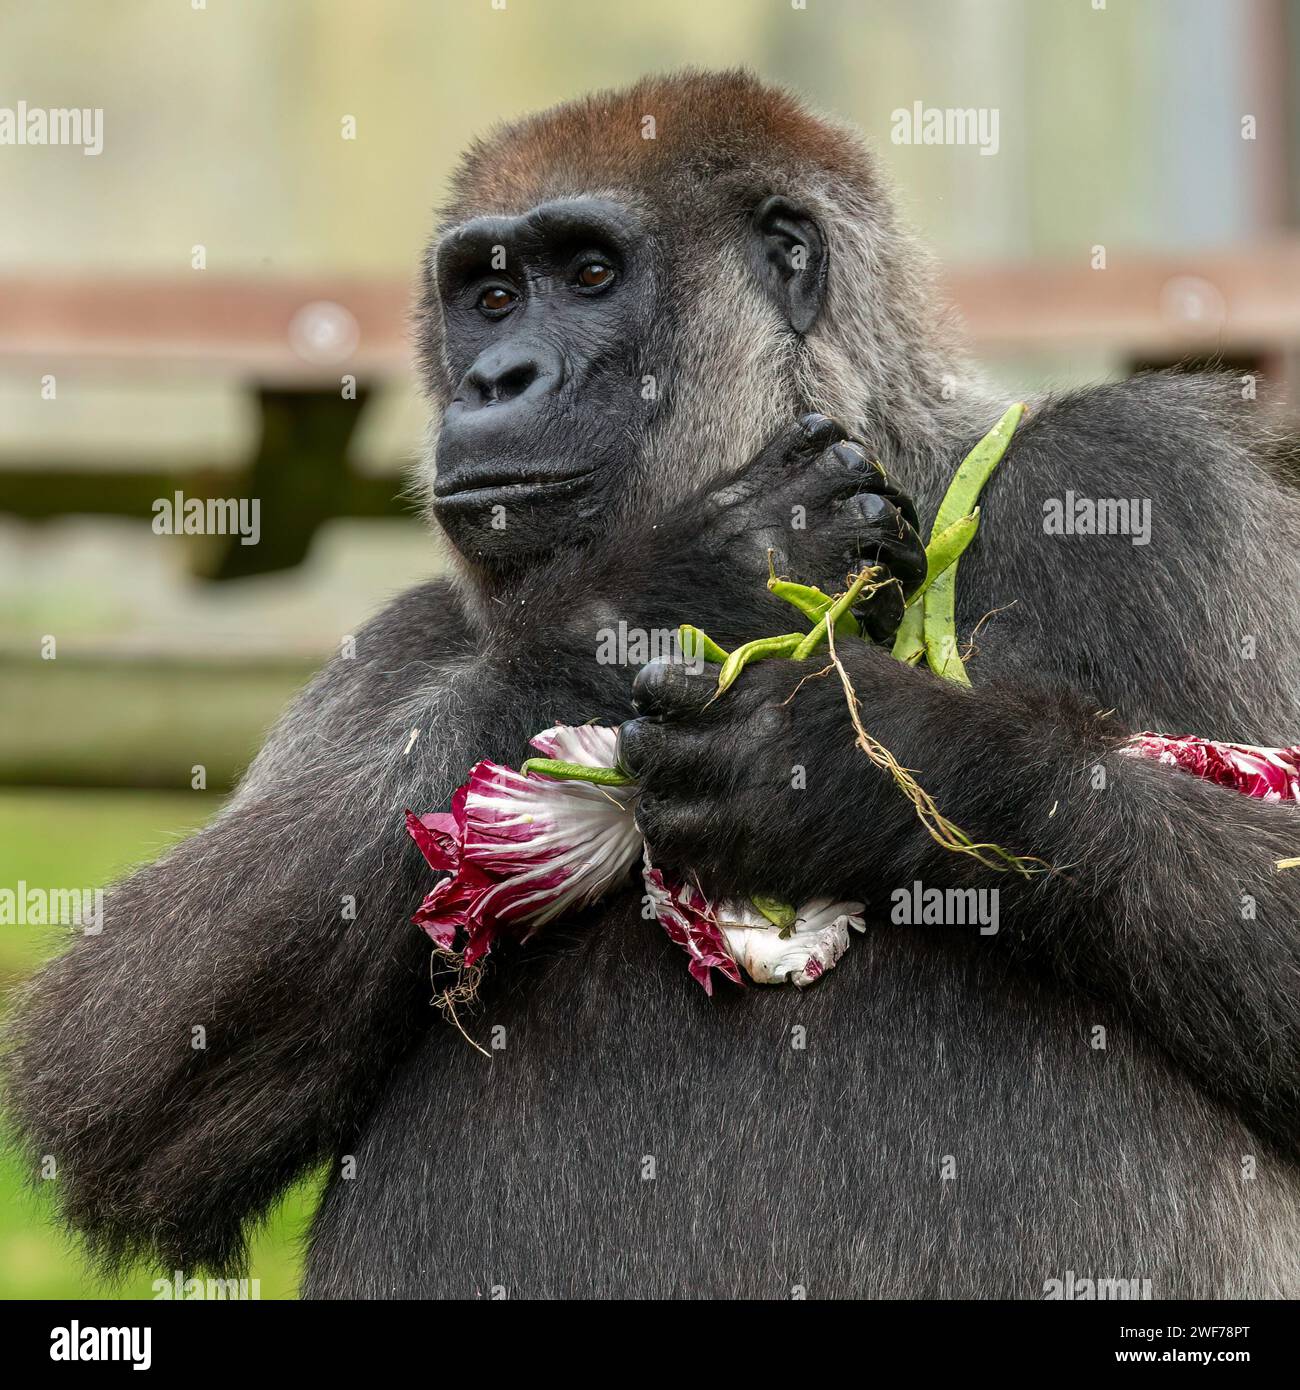 Haben wir noch mehr? SELTENE BILDER zeigen einen weiblichen Gorilla aus dem westlichen Tiefland, der sich glücklich an einem Rotkohl frisst. Wohnsitz in der Aspinall Foundation P Stockfoto